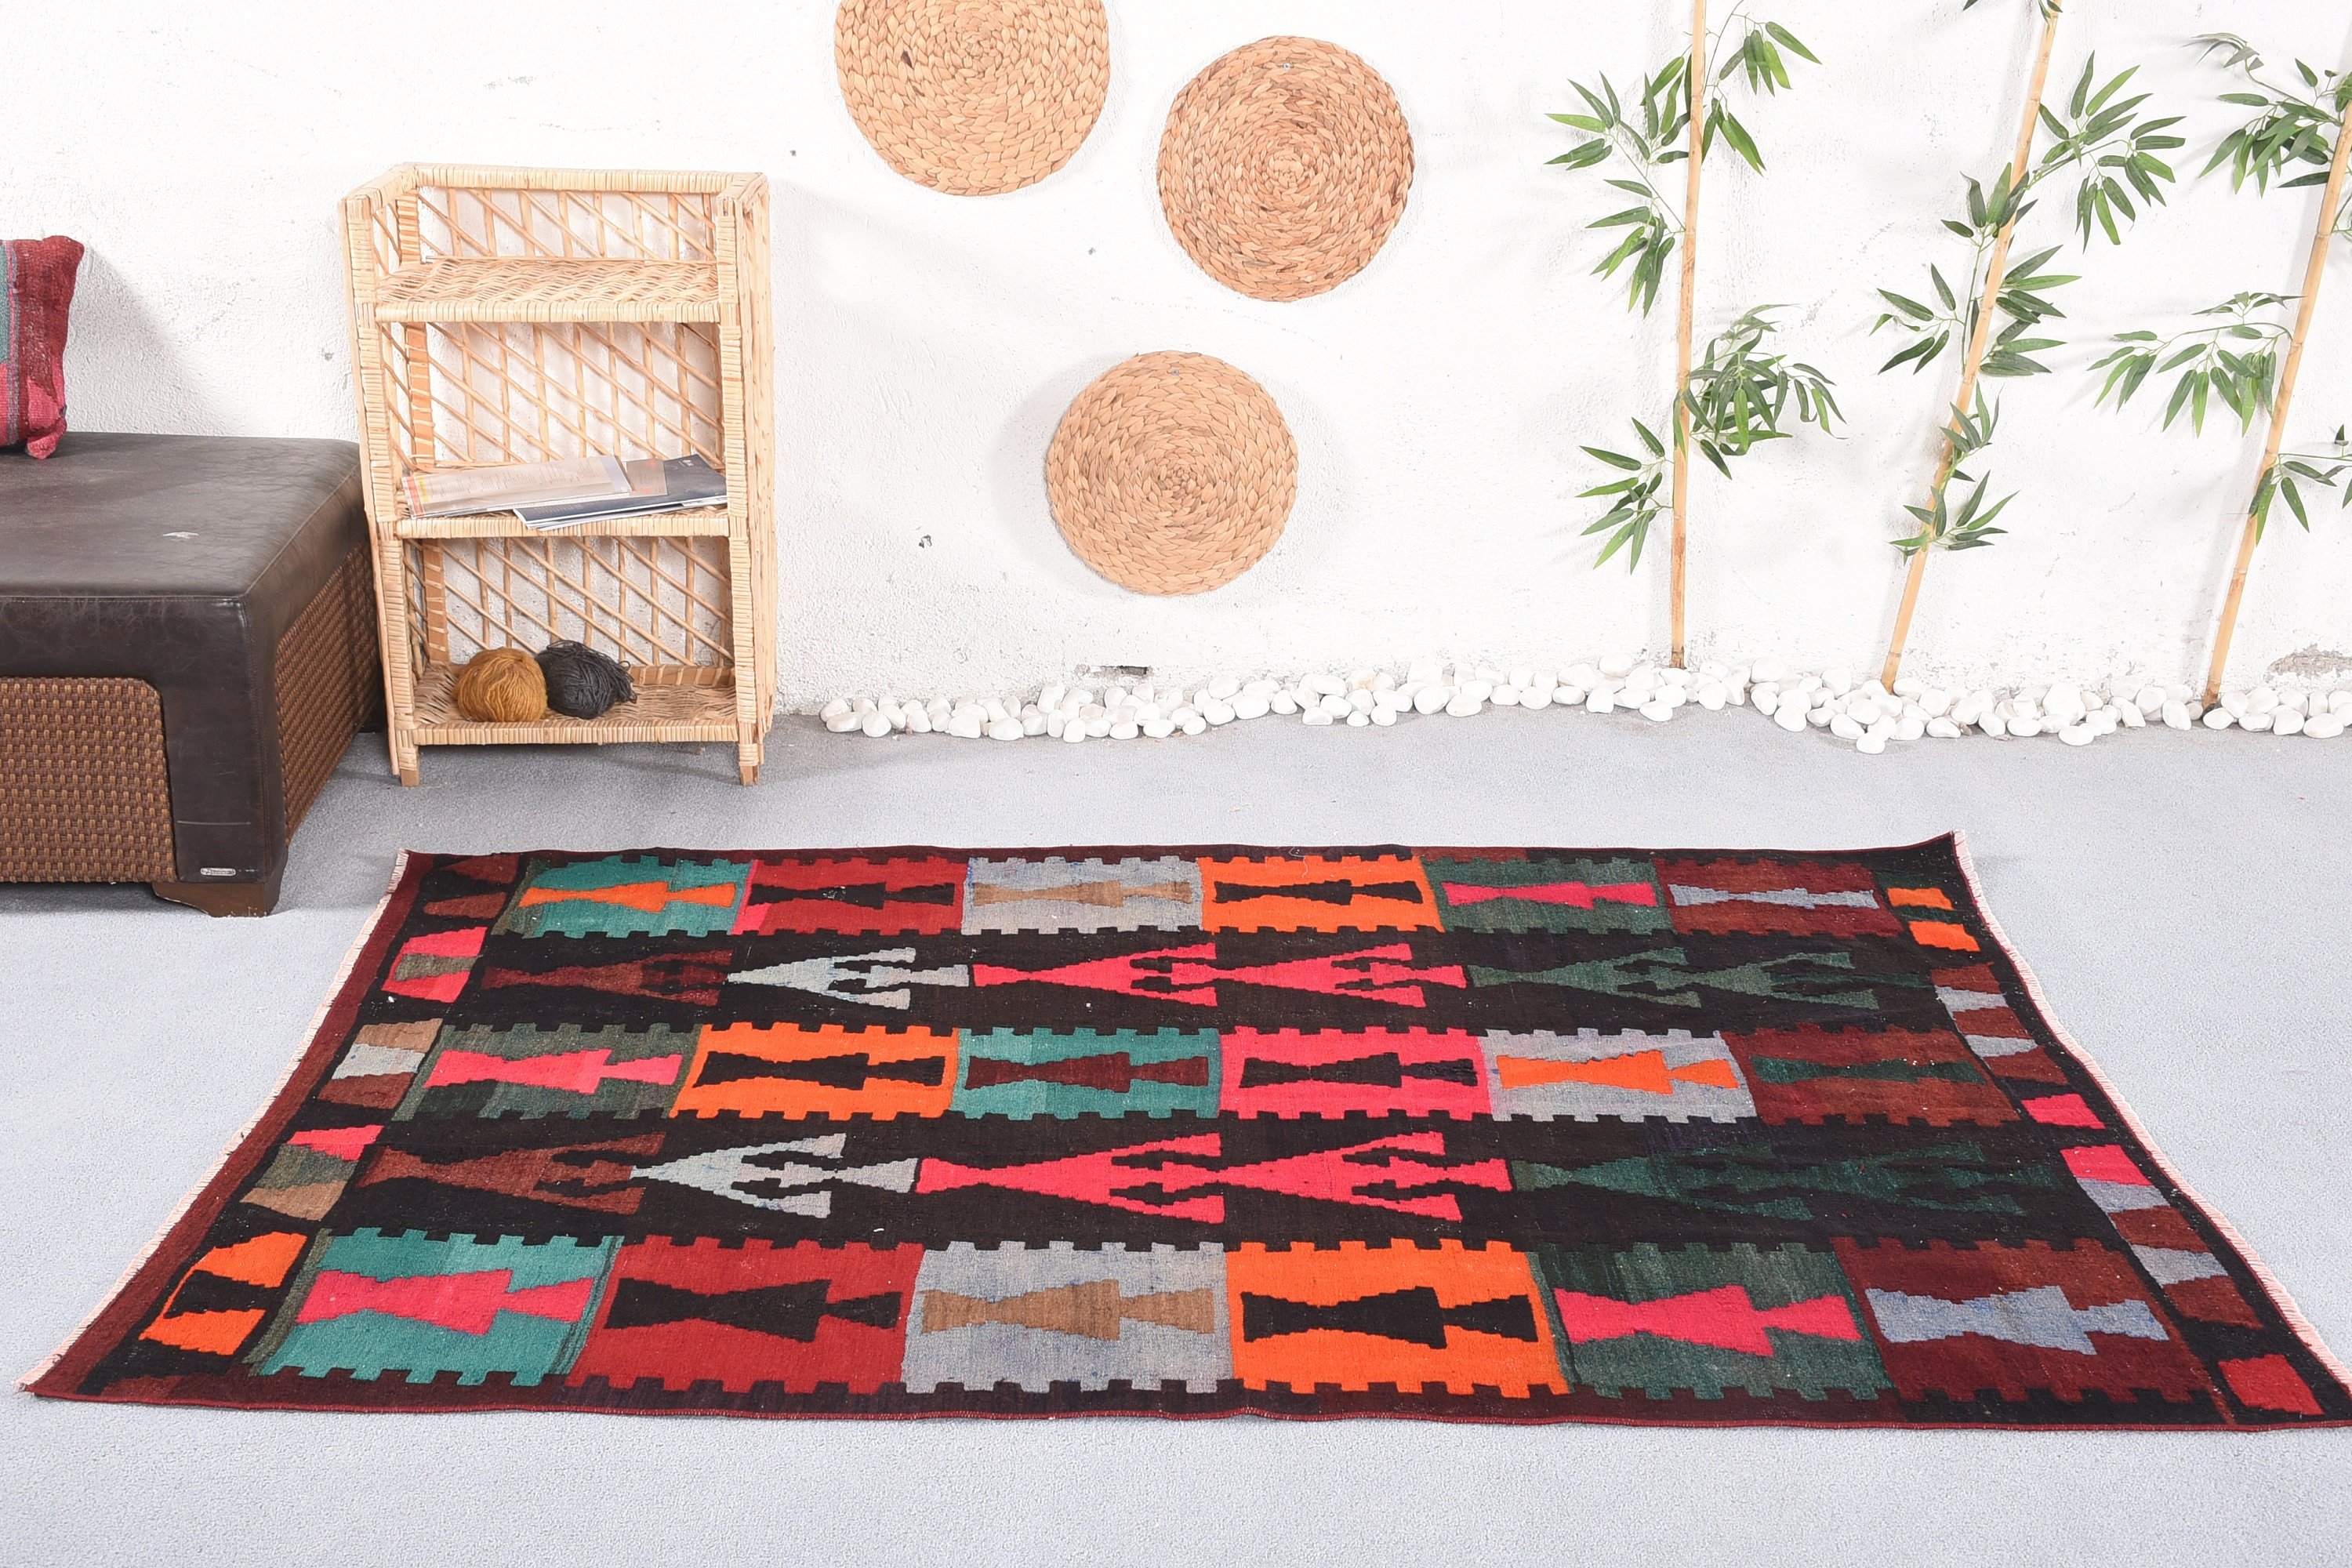 Moroccan Rugs, Vintage Rug, Brown Antique Rugs, Antique Rug, Kilim, Living Room Rug, Nursery Rugs, 4.6x6.4 ft Area Rugs, Turkish Rug